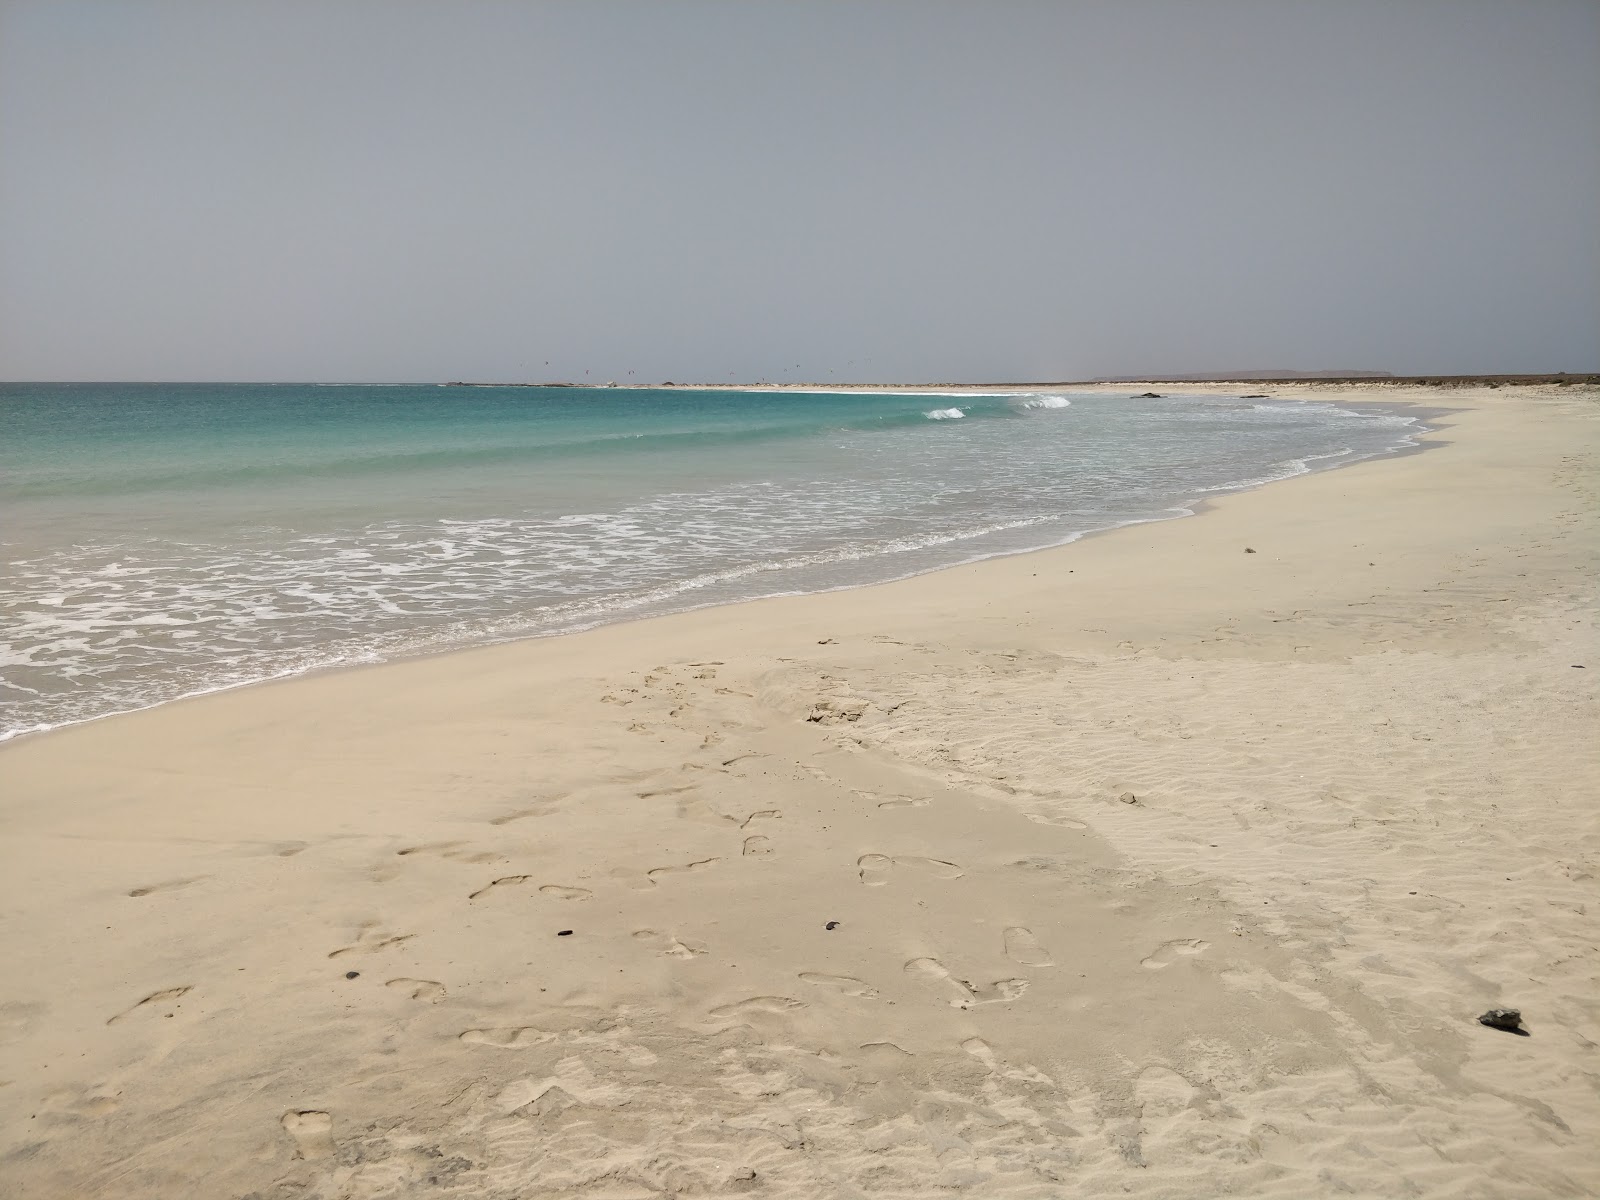 Praia de Abrabas'in fotoğrafı parlak ince kum yüzey ile